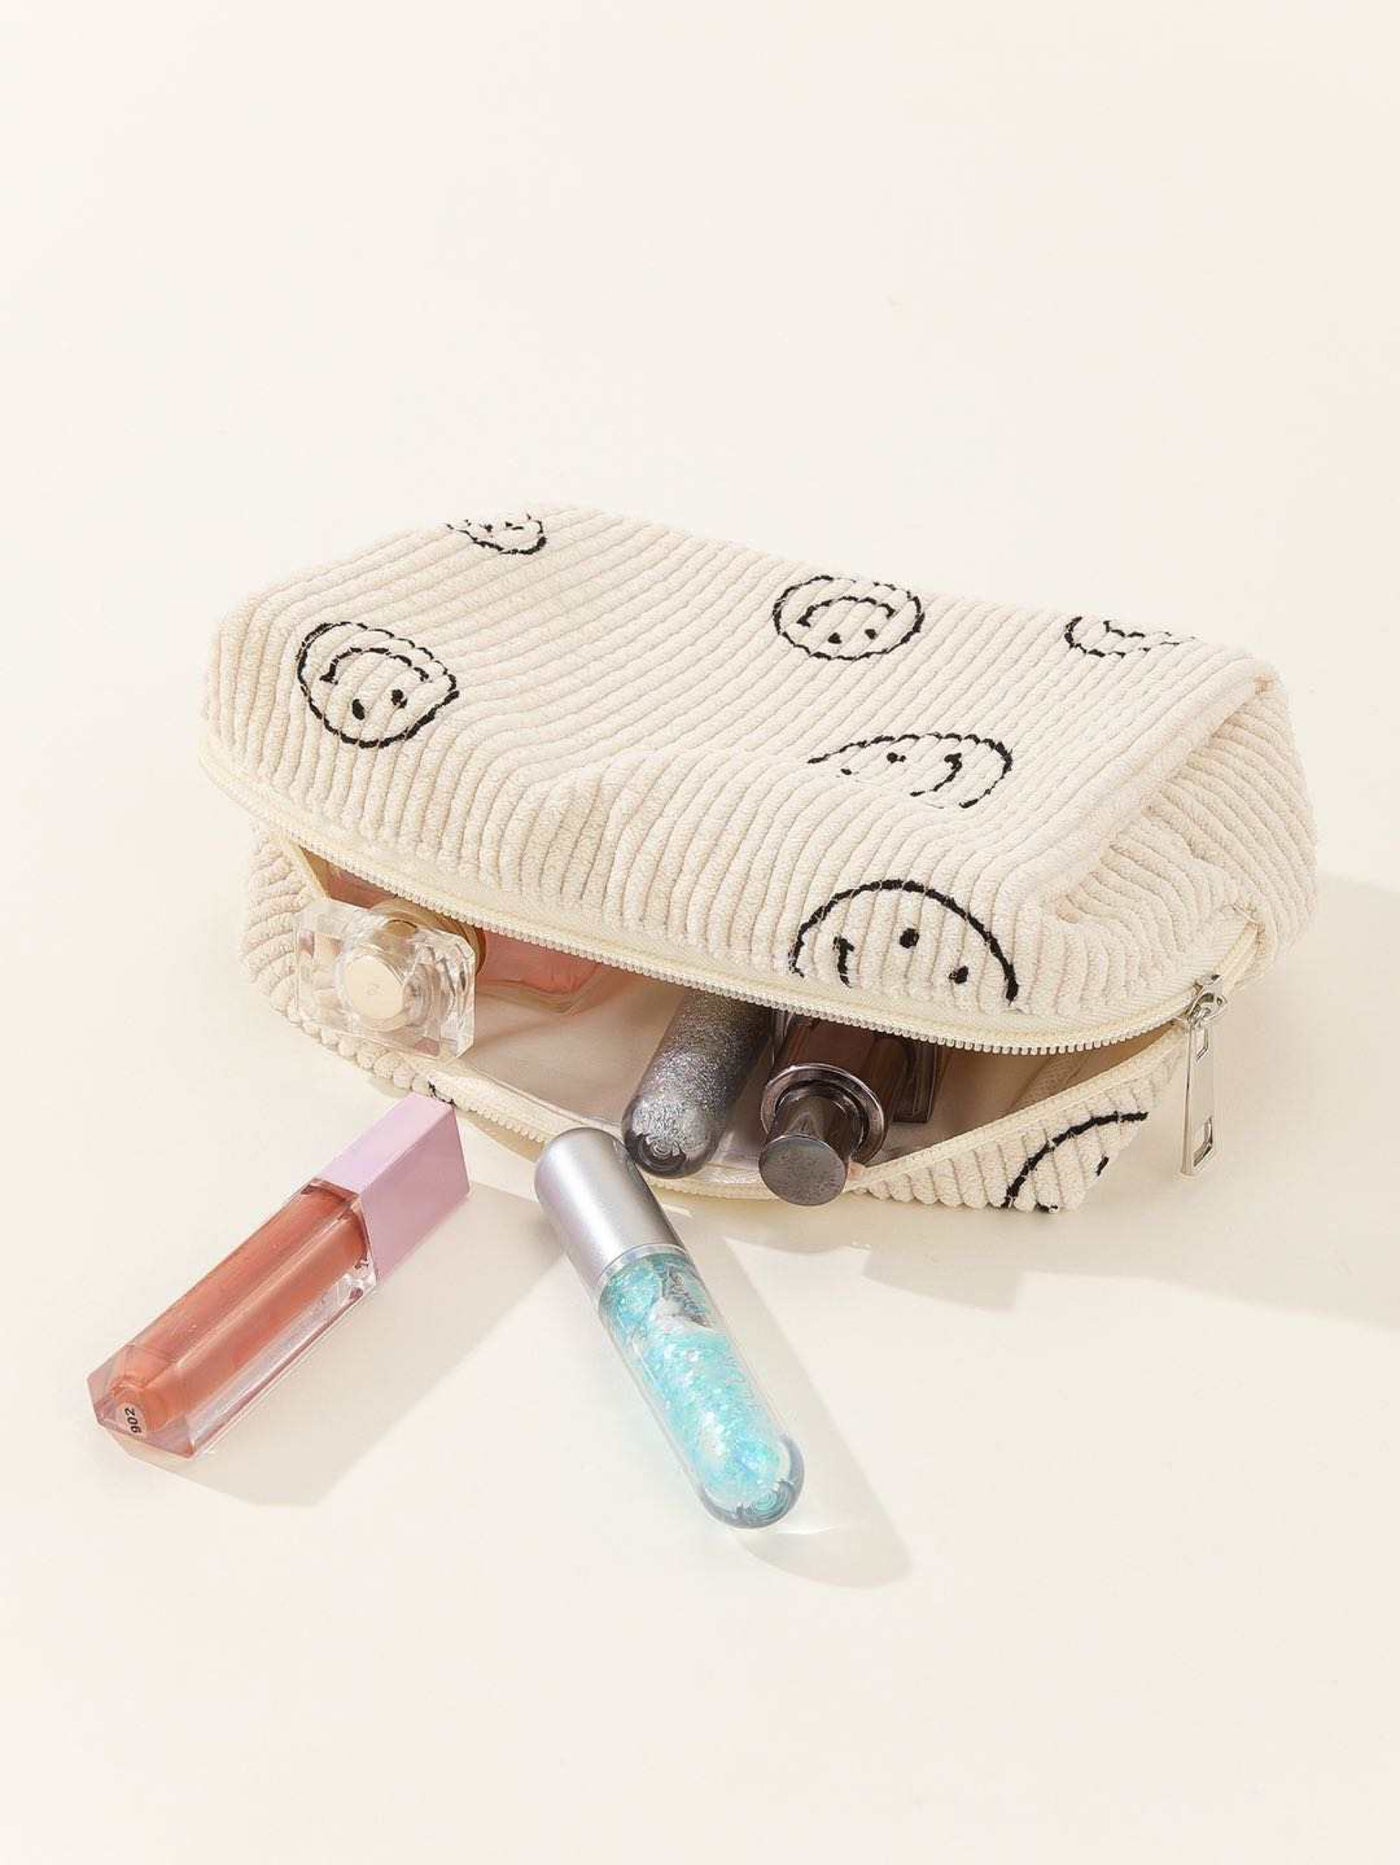 Small Corduroy Smile Cosmetic Bag